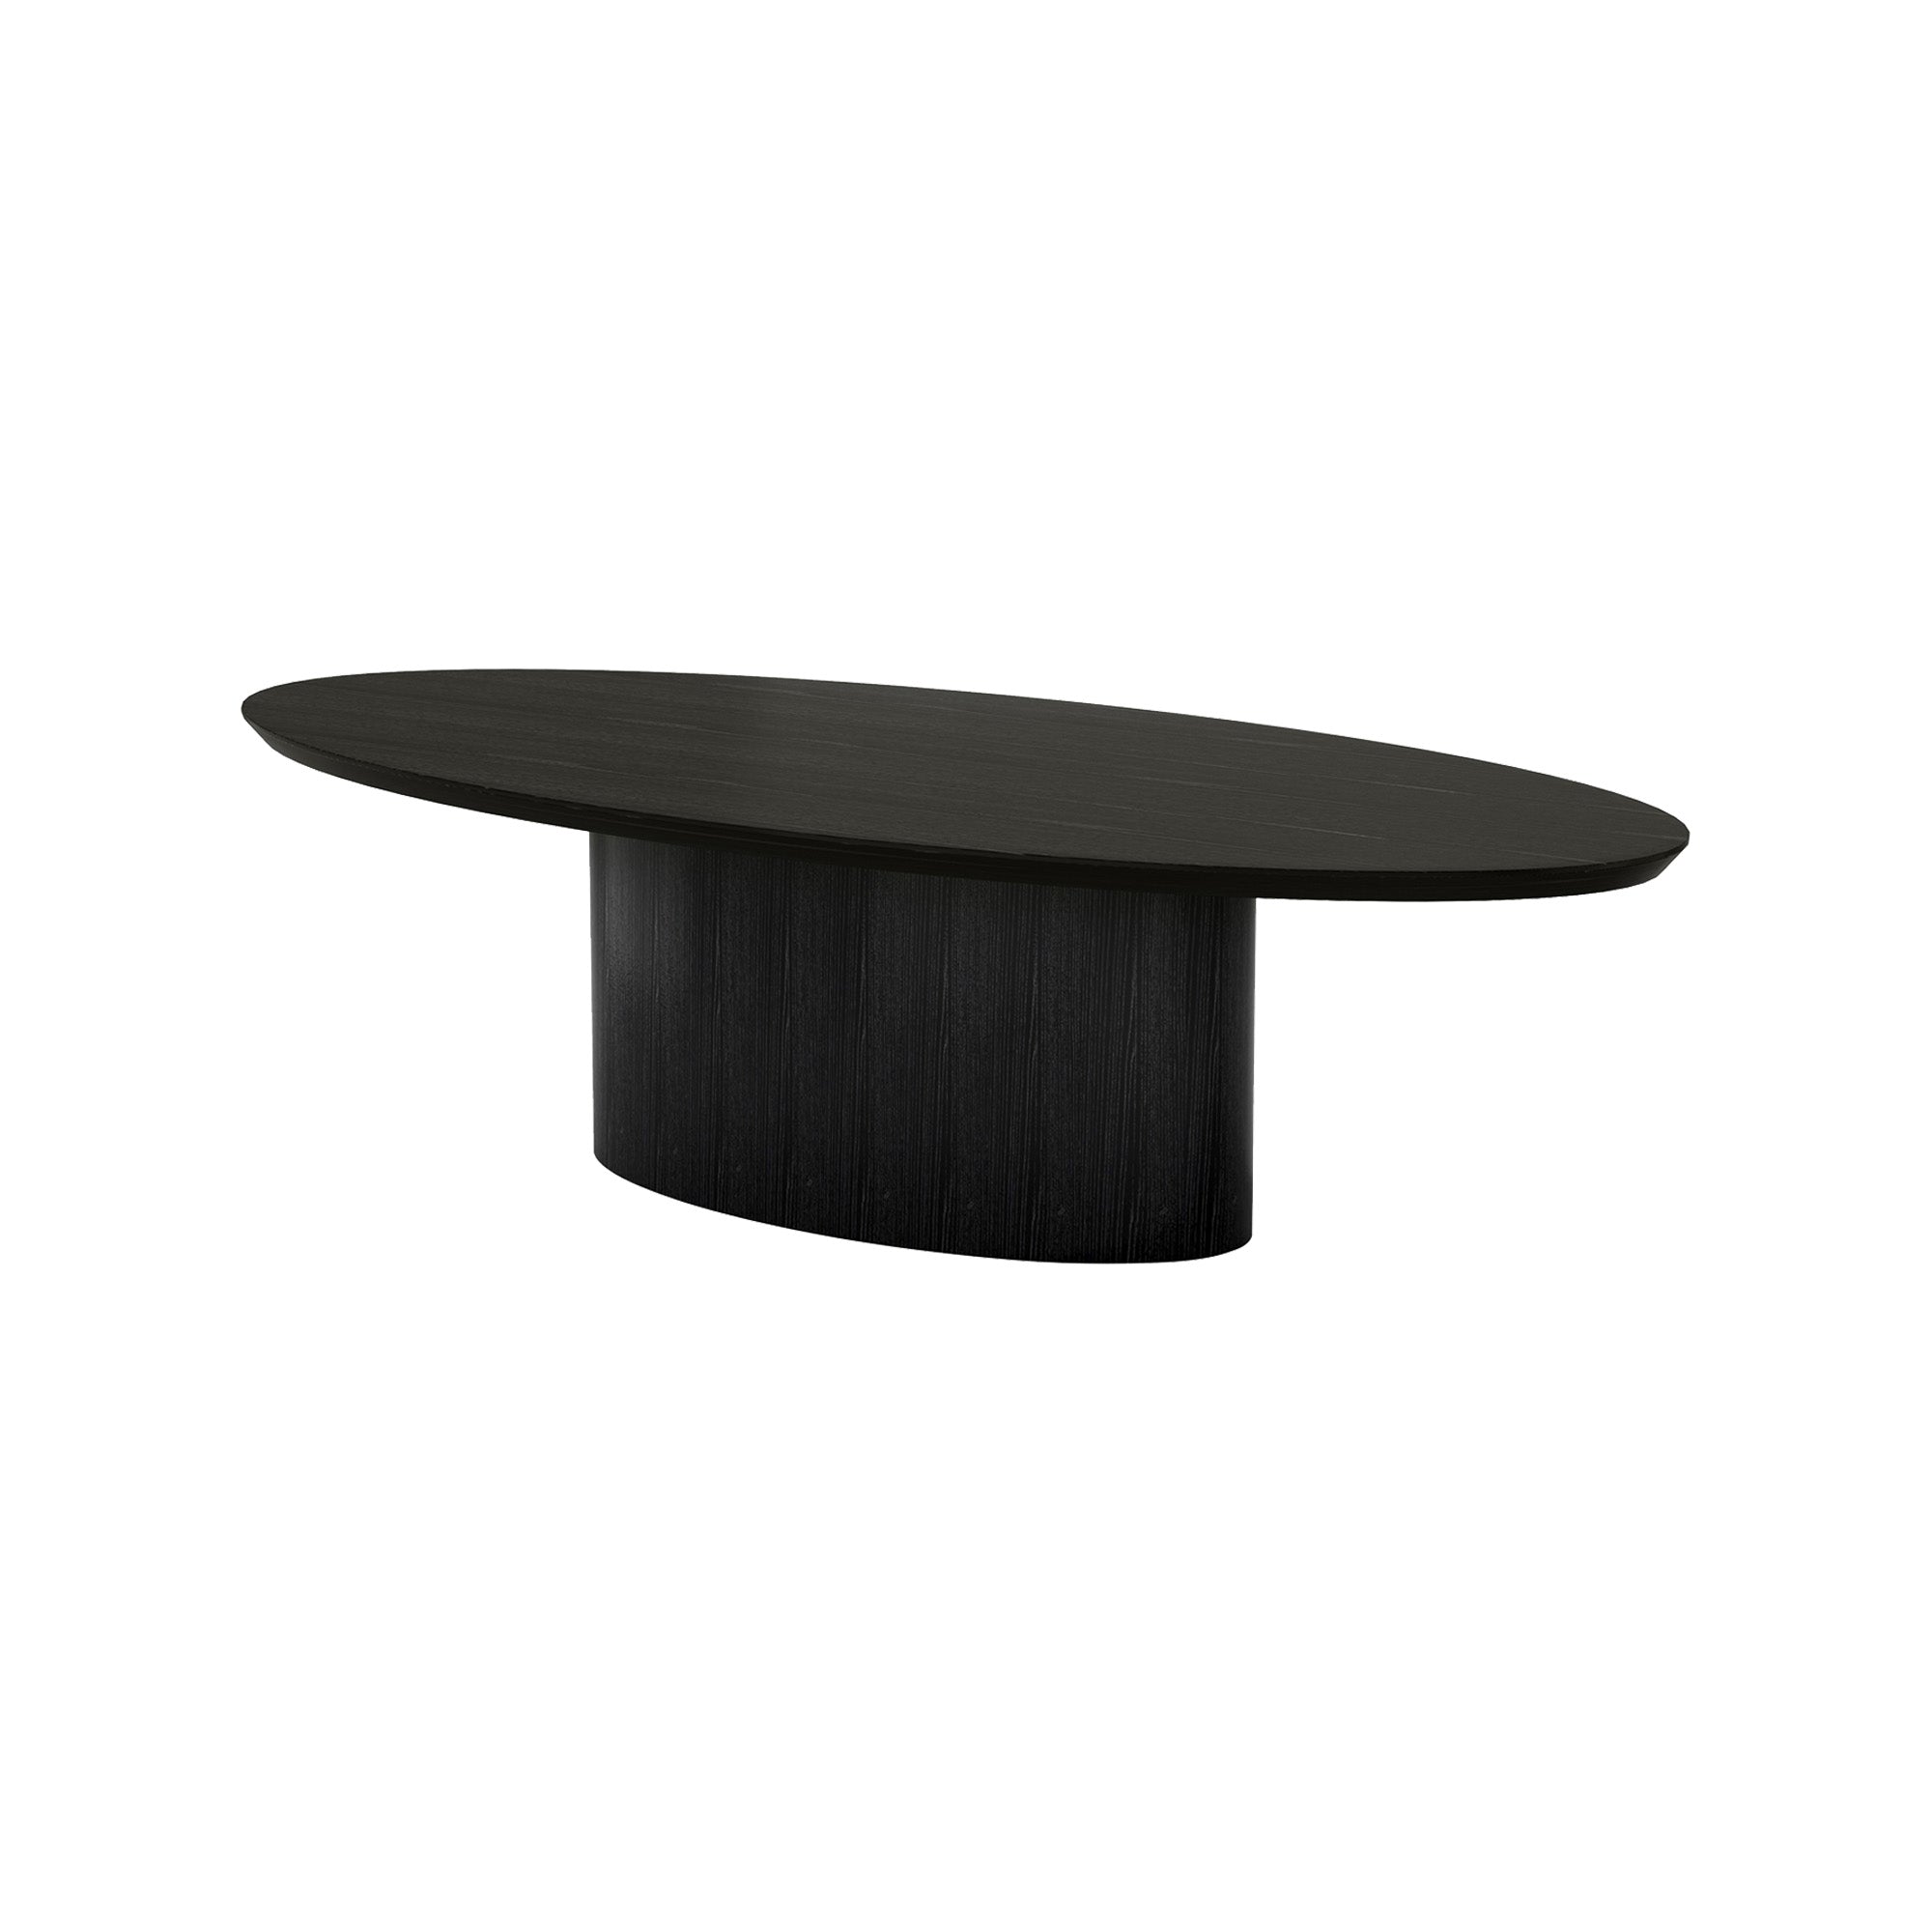 Pippa Oval Dining Table Black Medium